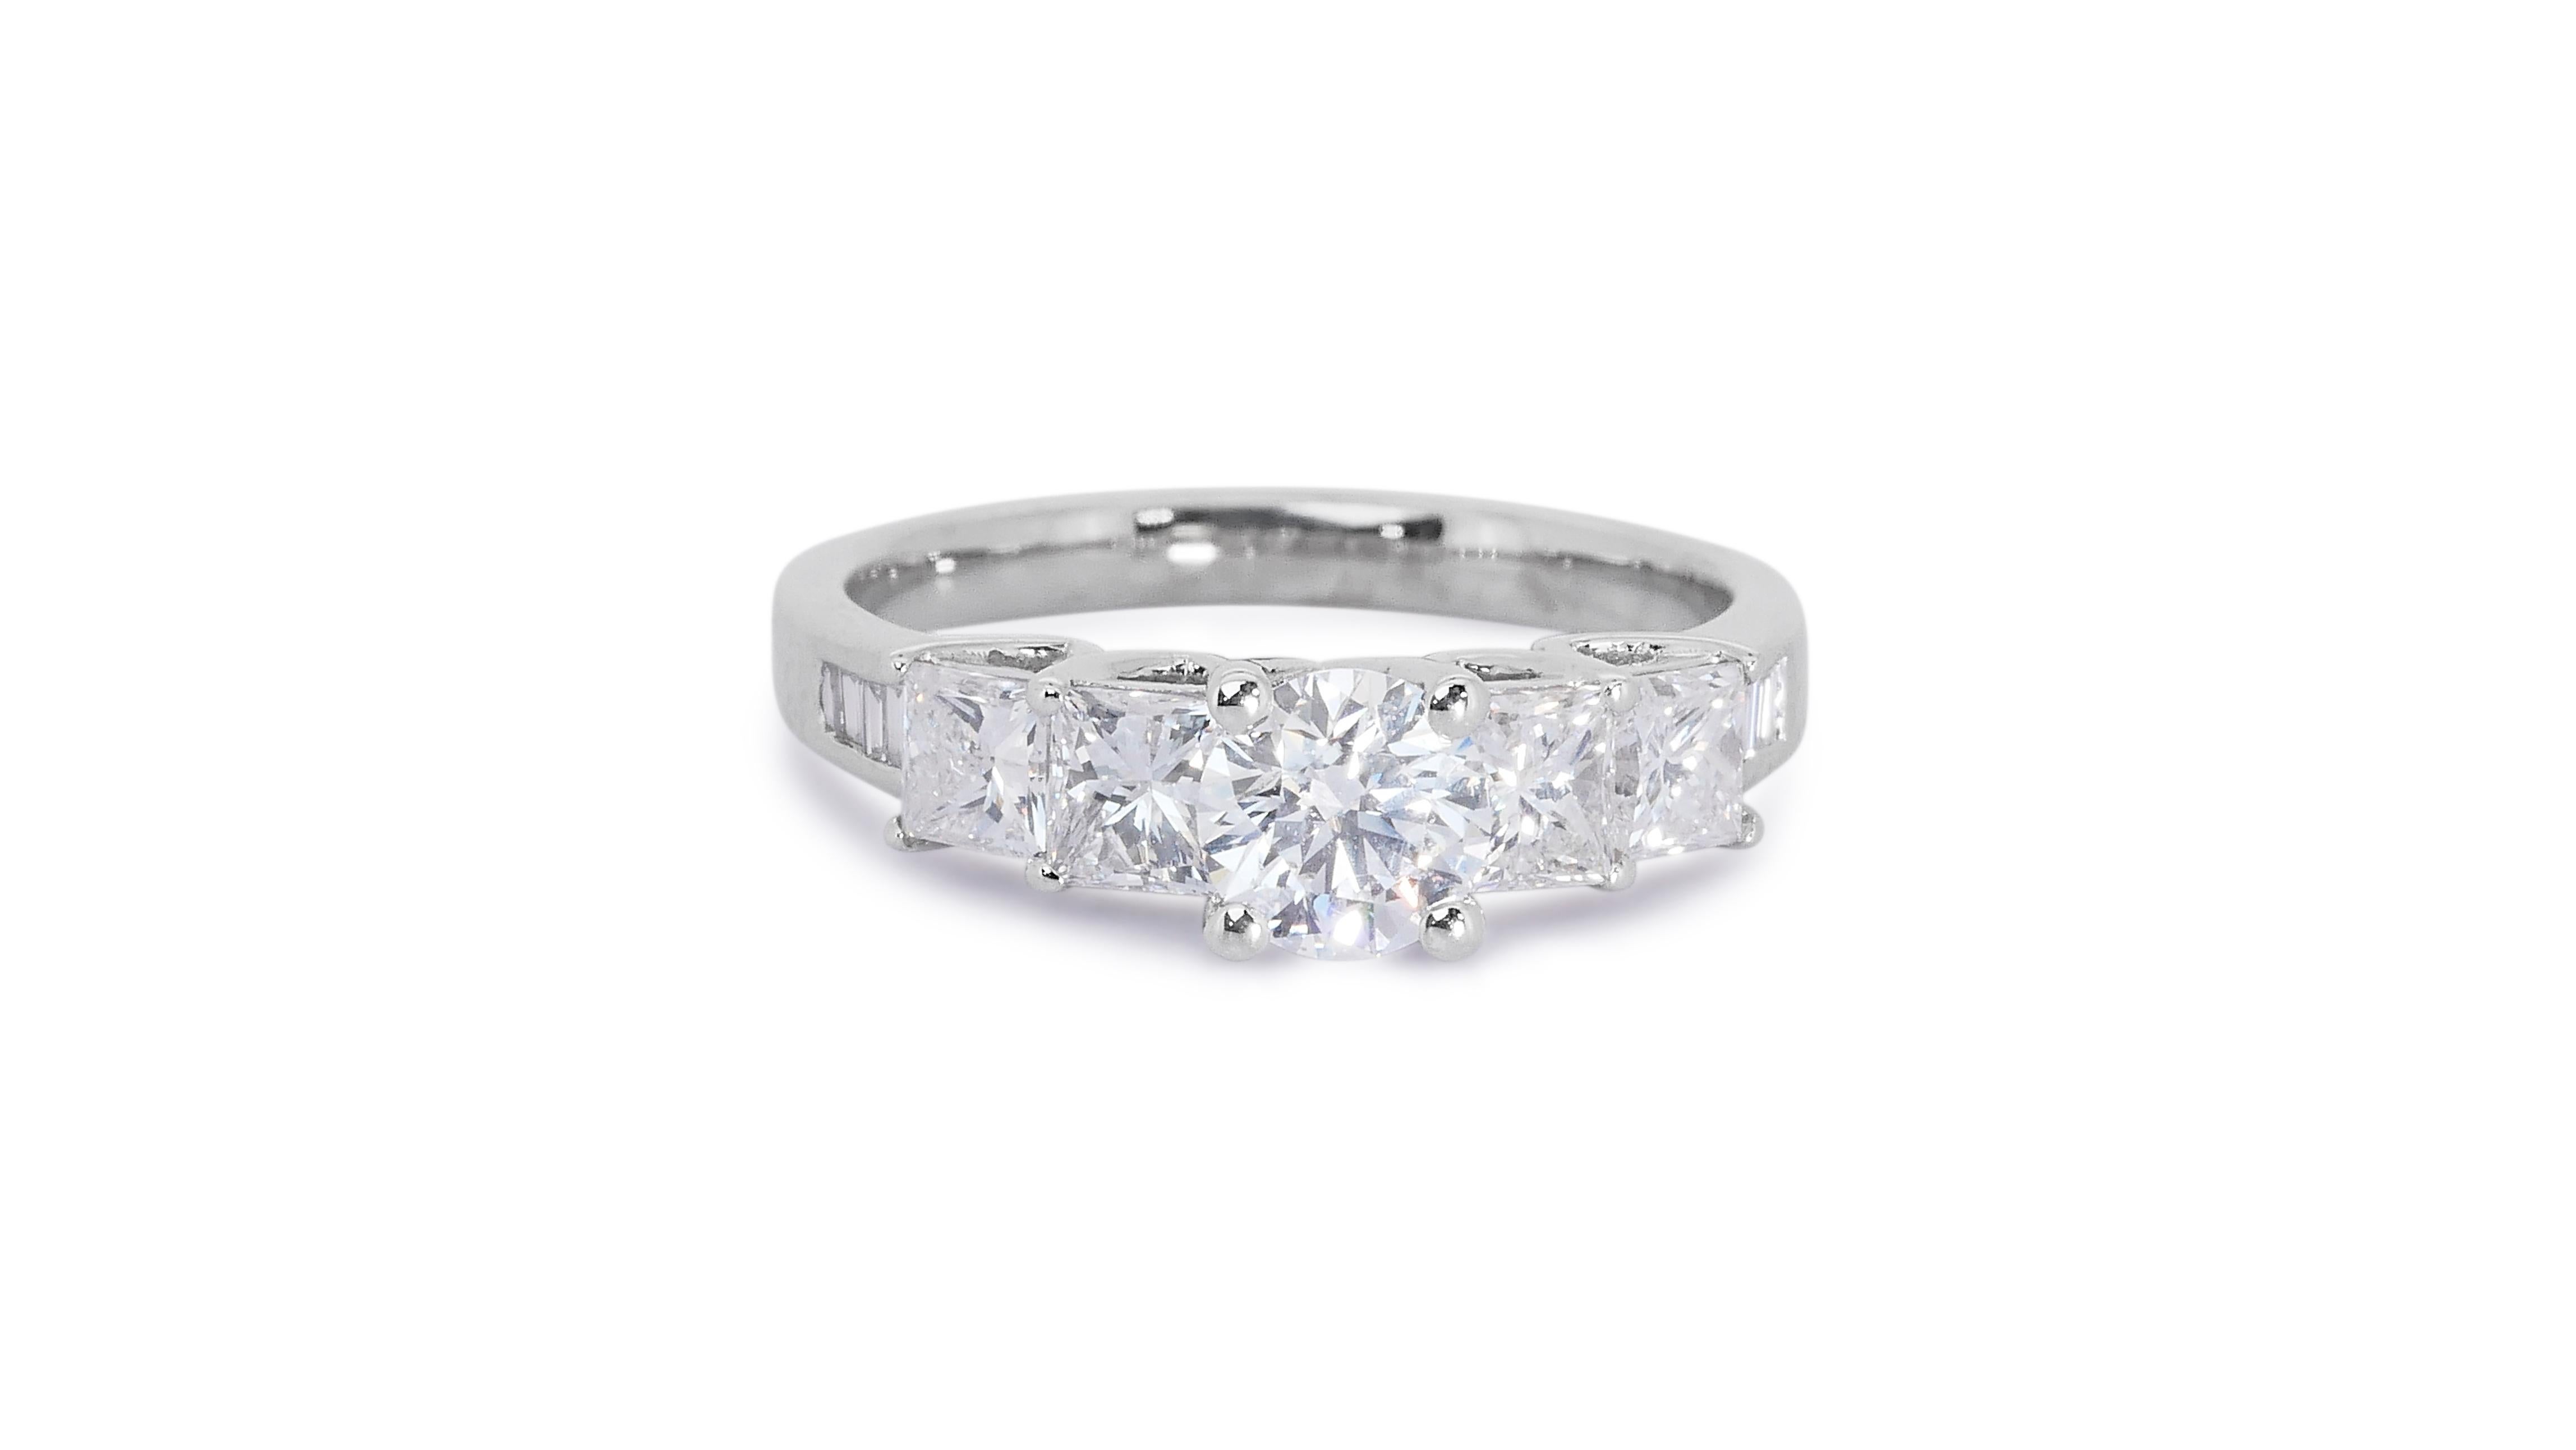 Ravishing 18k White Gold 5 Stone Ring W/ 1.16Ct Natural Diamonds AIG Certificate 1